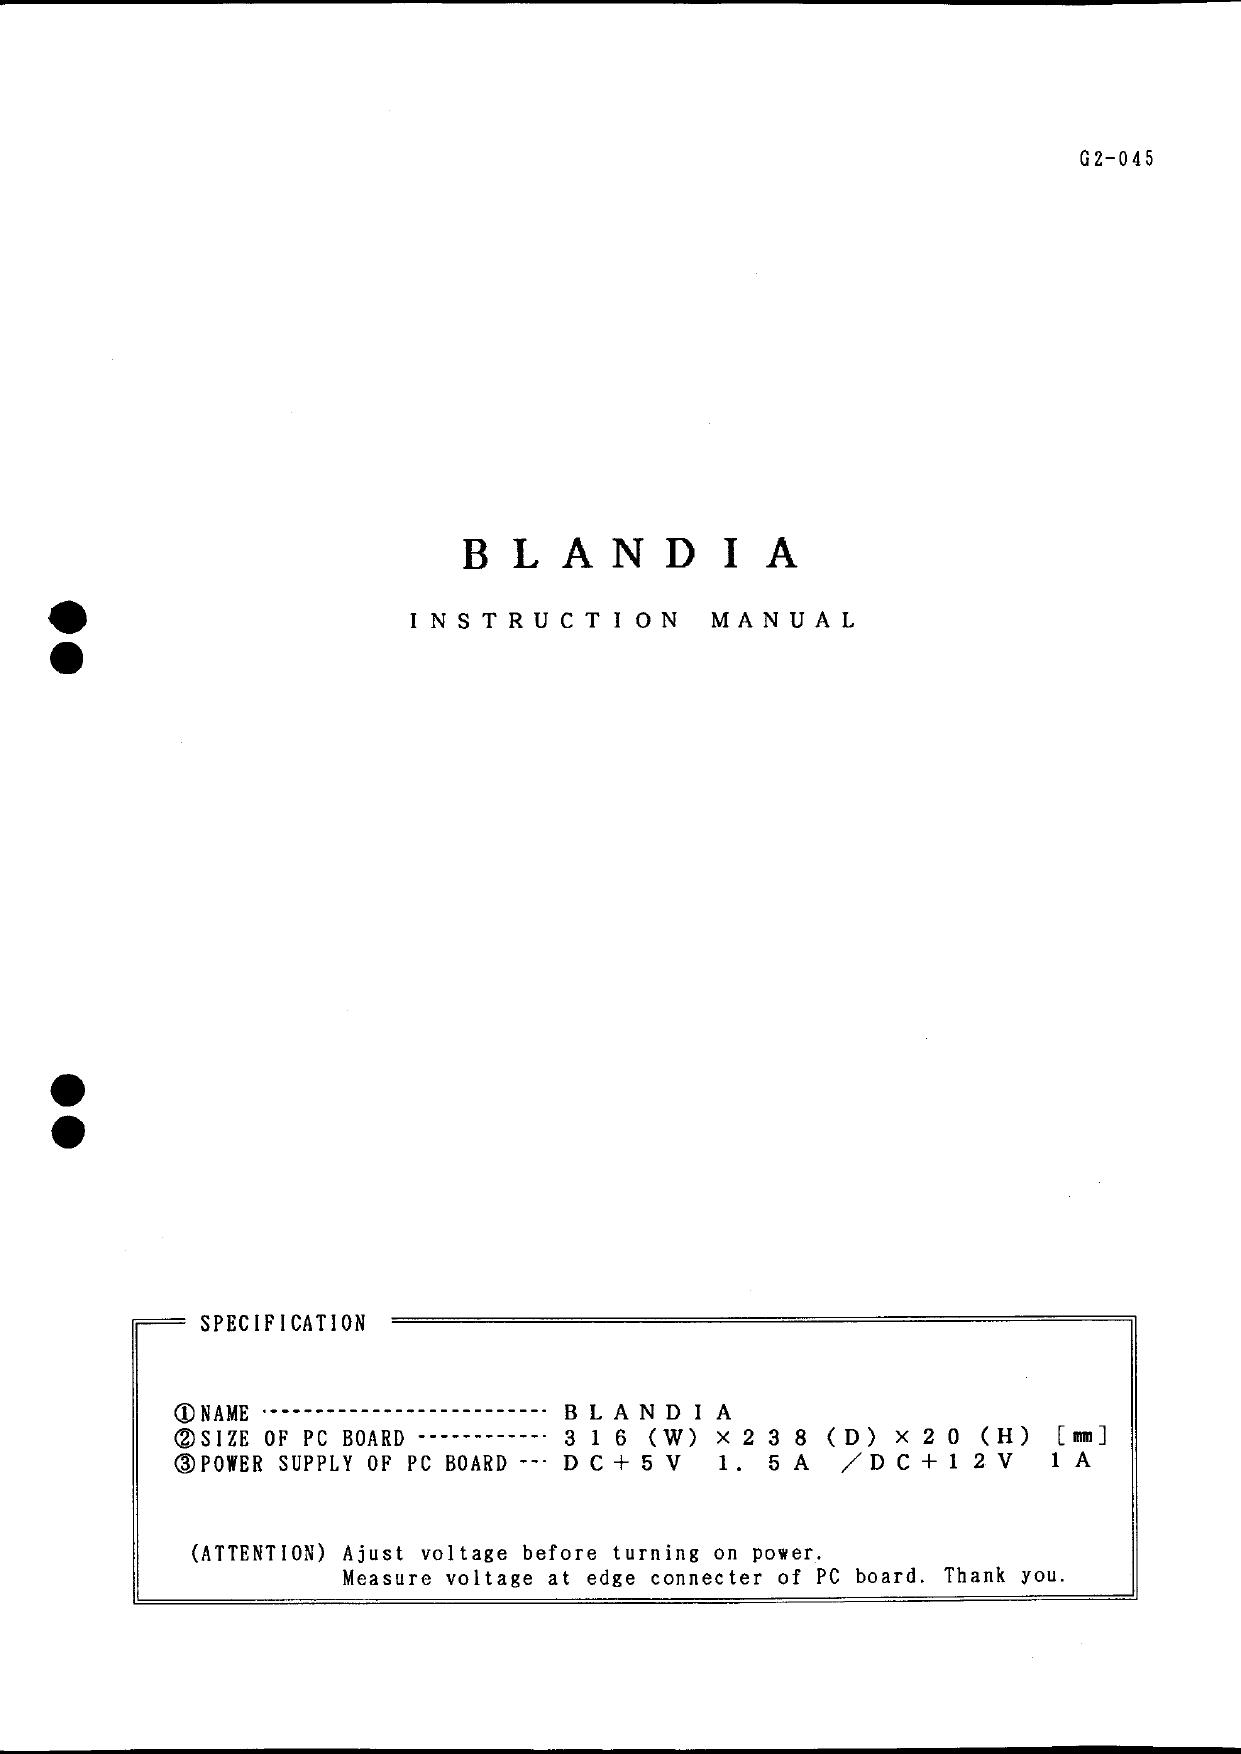 Blandia